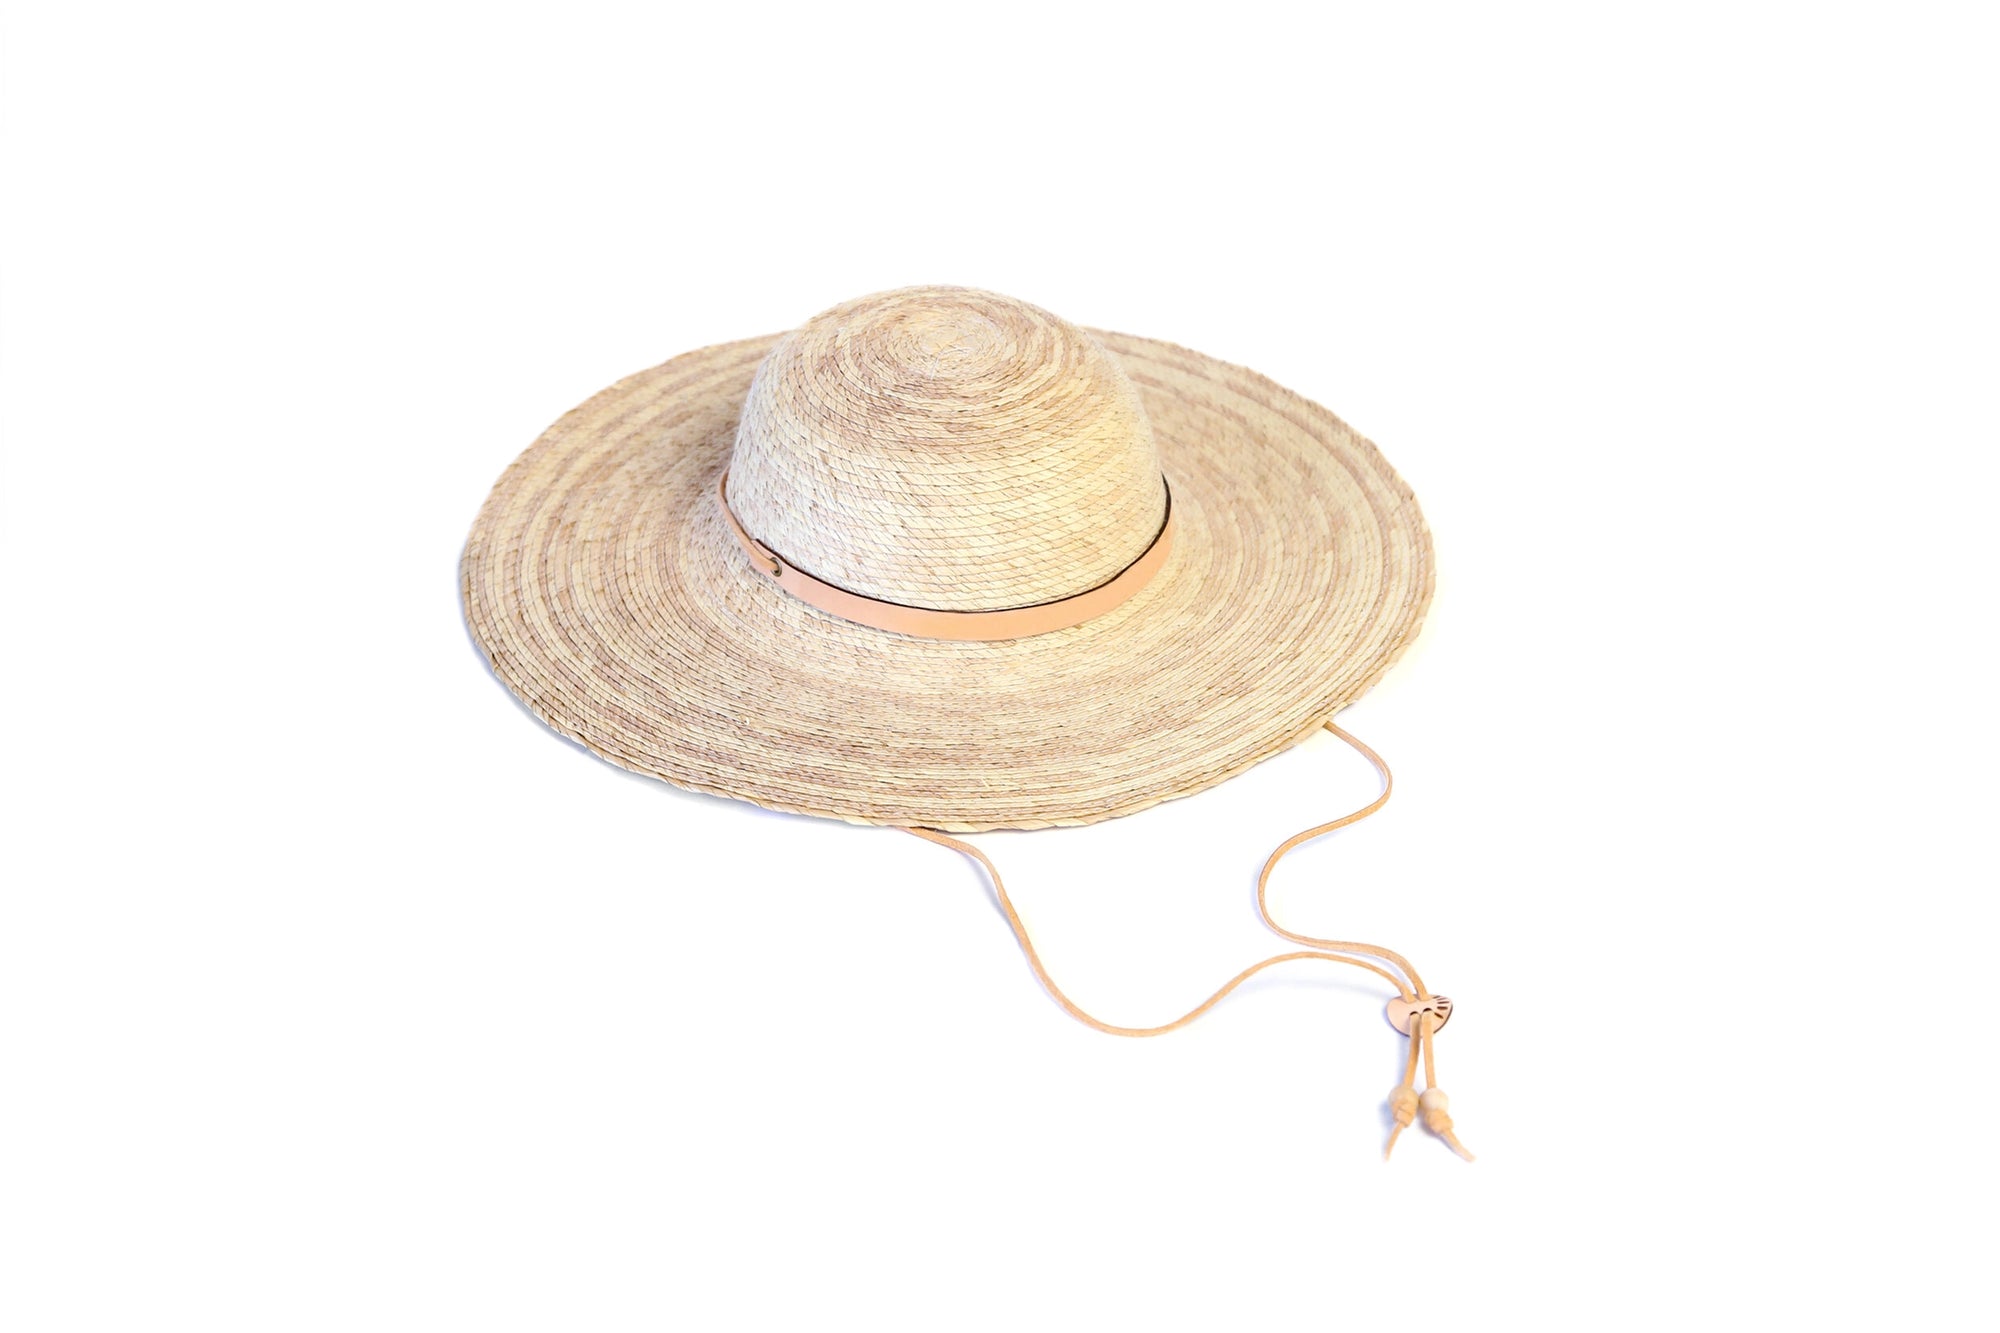 Mercado Sombra Woven Palm Sun Hat